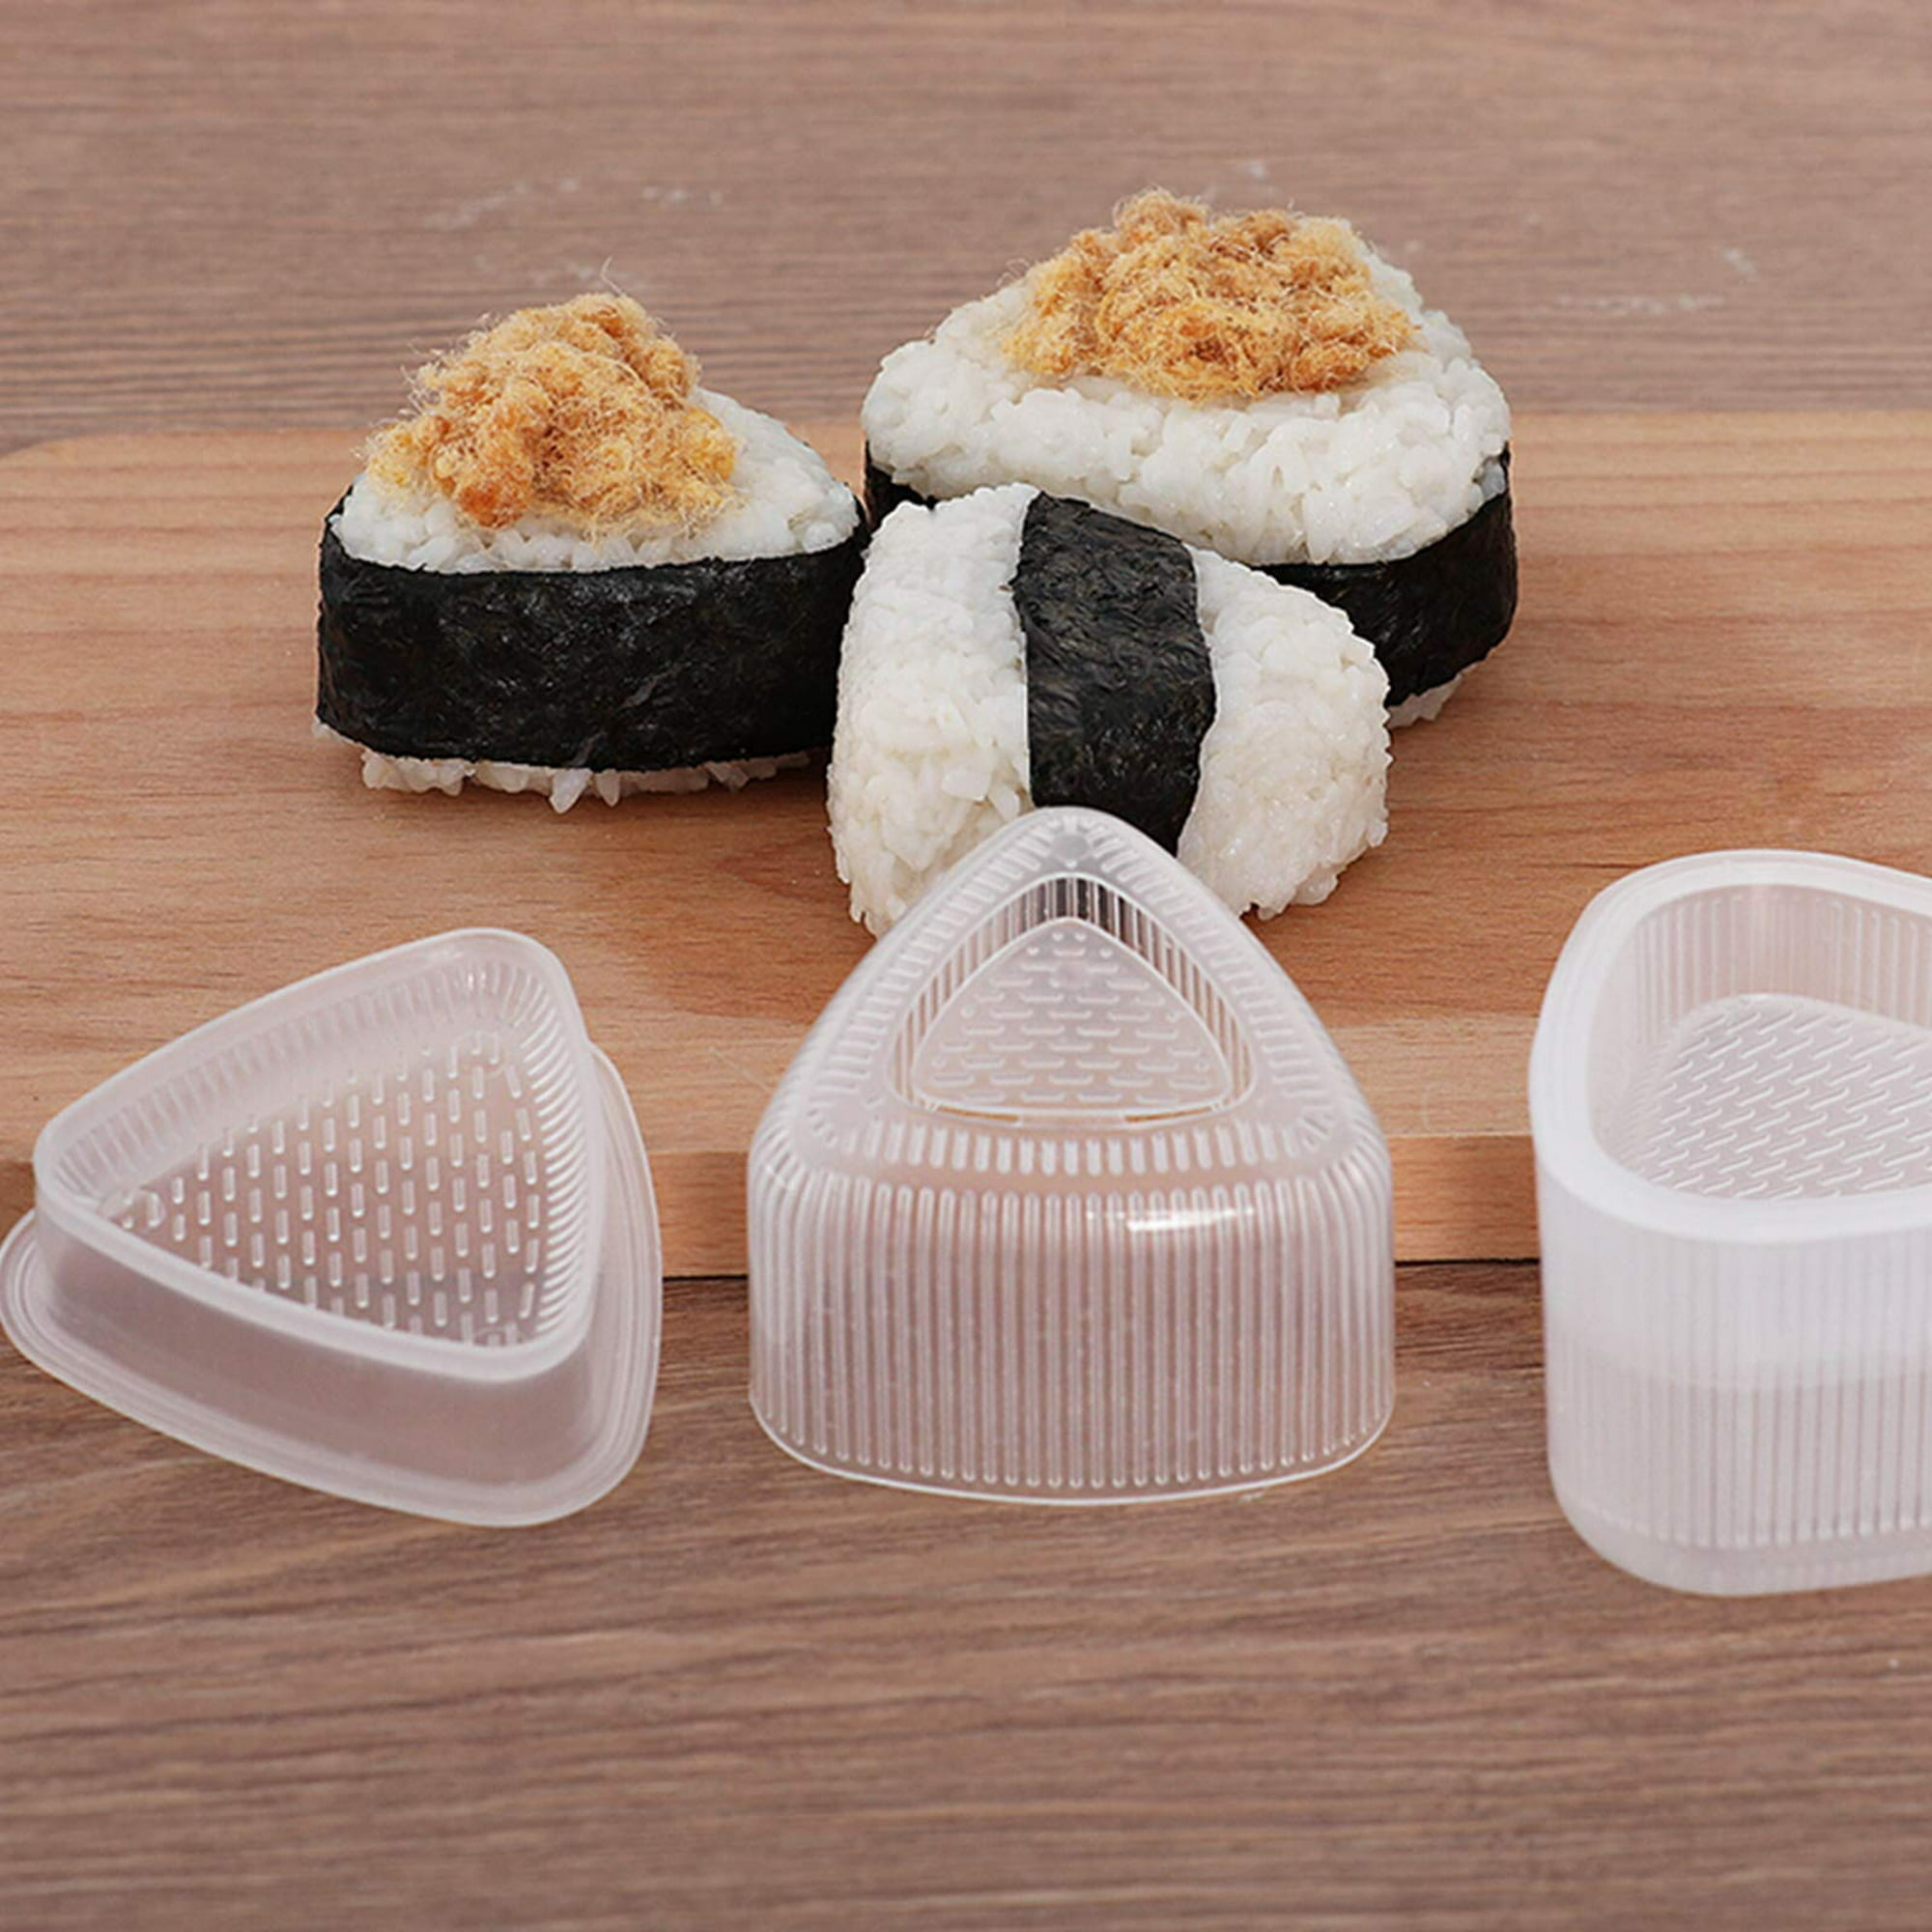 Molde triangular para sushi, molde de arroz Onigiri de grado alimenticio  sin BPA, forma hasta 6 bolas de arroz de sushi a la vez fácil y rápidamente